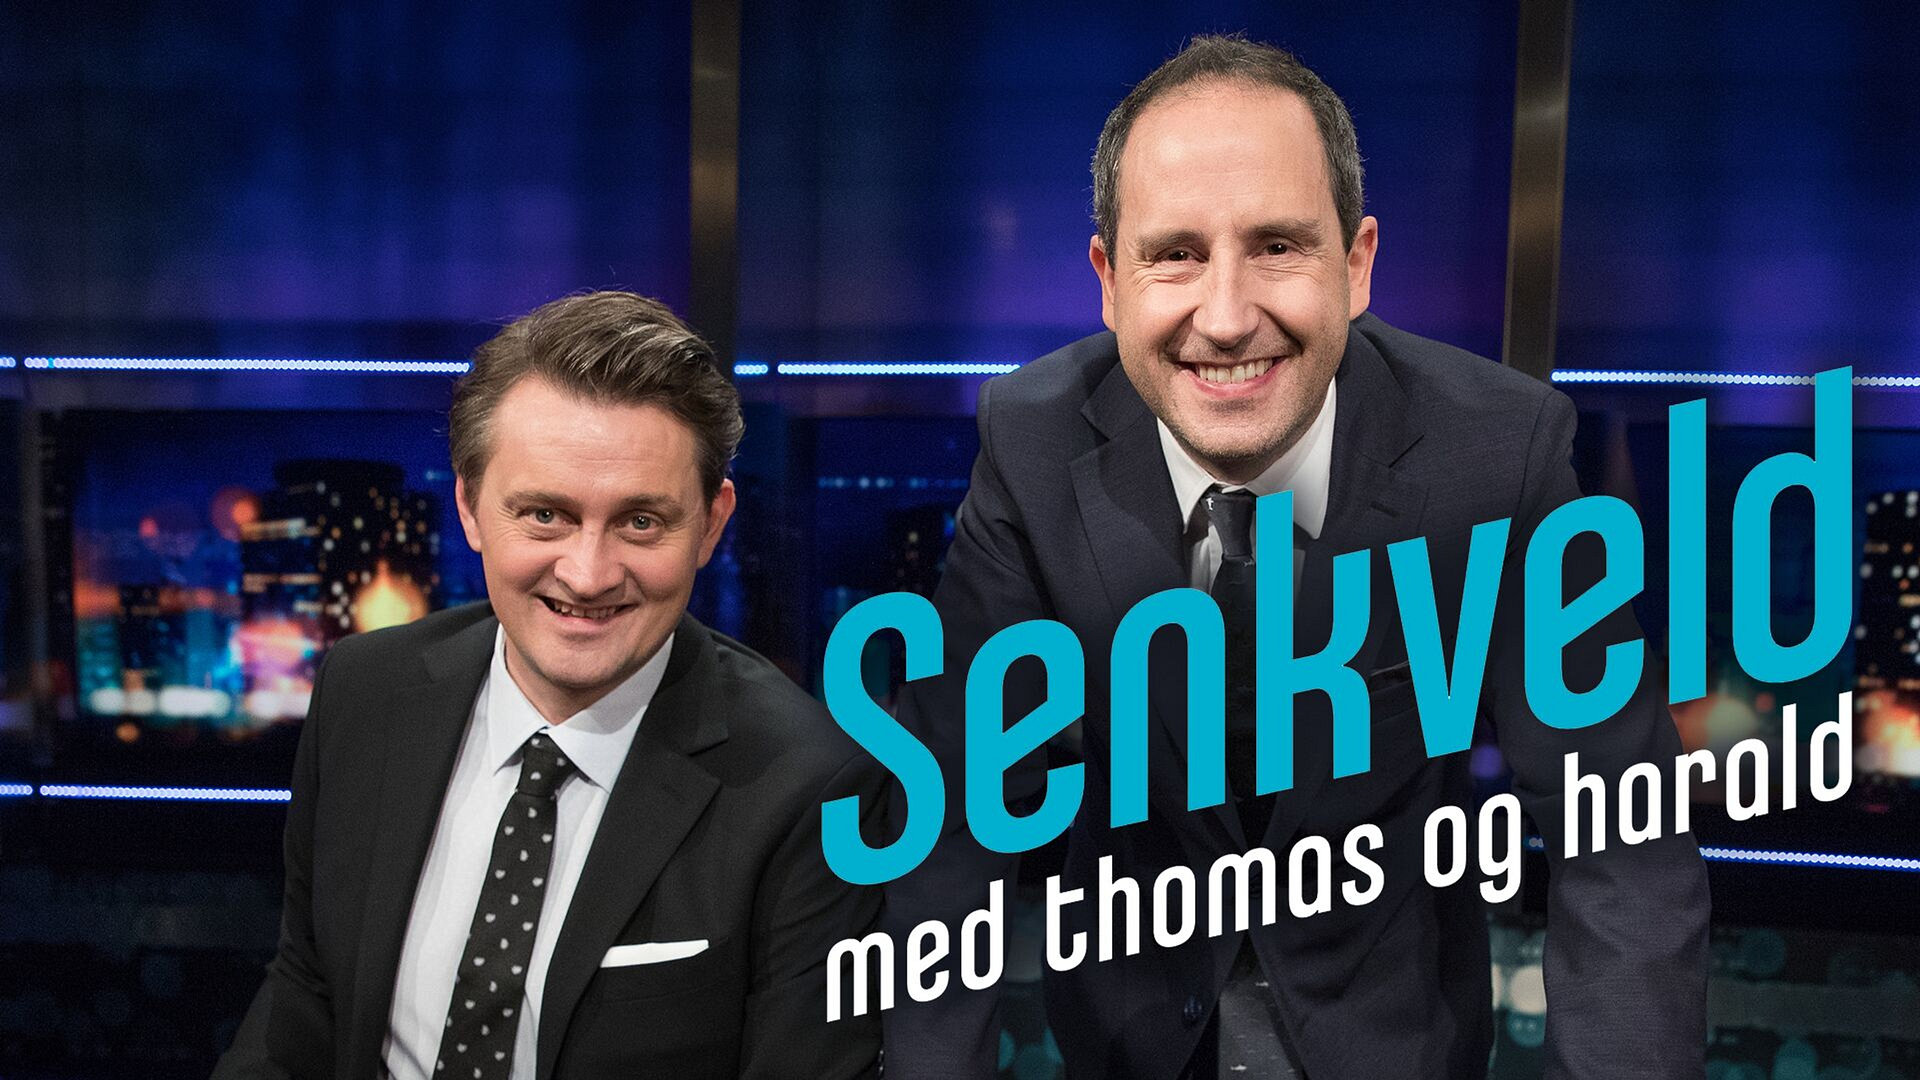 Senkveld med Thomas og Harald (24) - episode 2